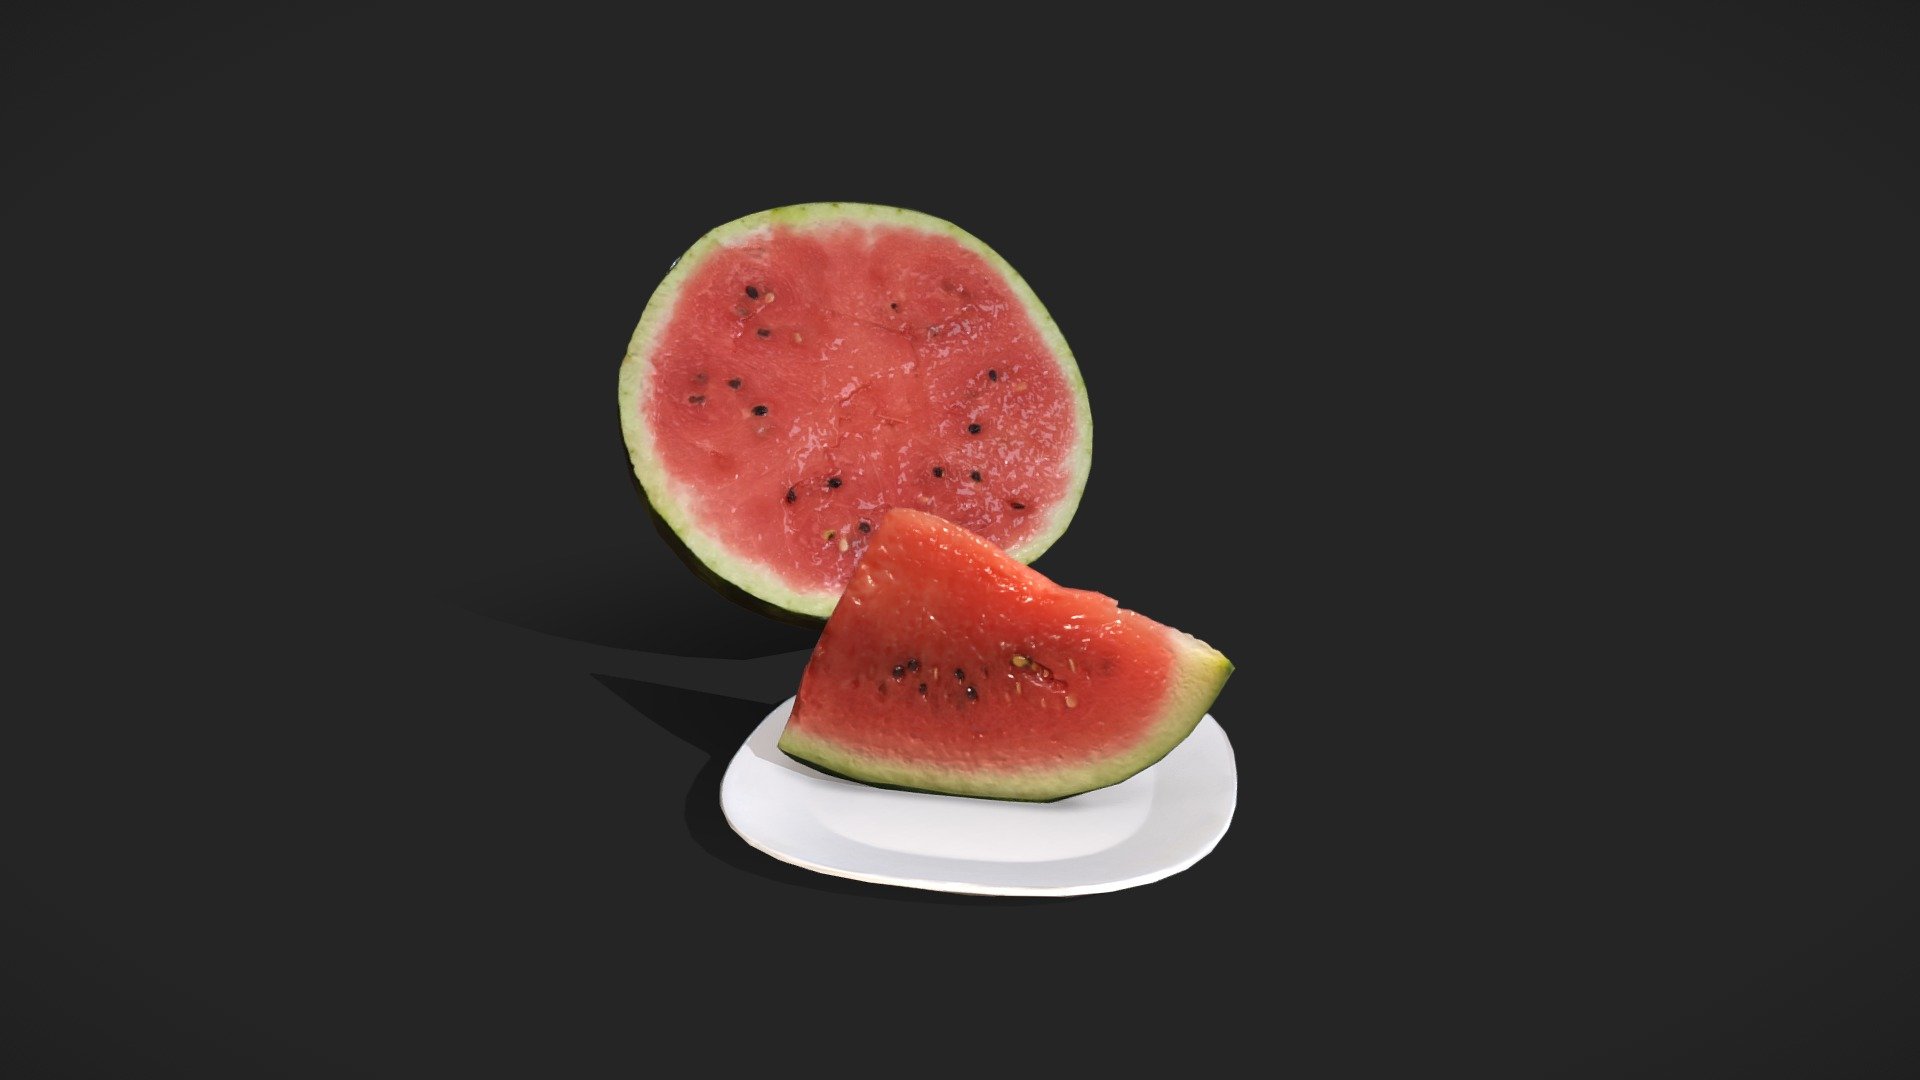 Lowpoly scan 
Vert: 951 
Tris: 1888 - Scan / Watermelon - 3D model by Romoonql 3d model